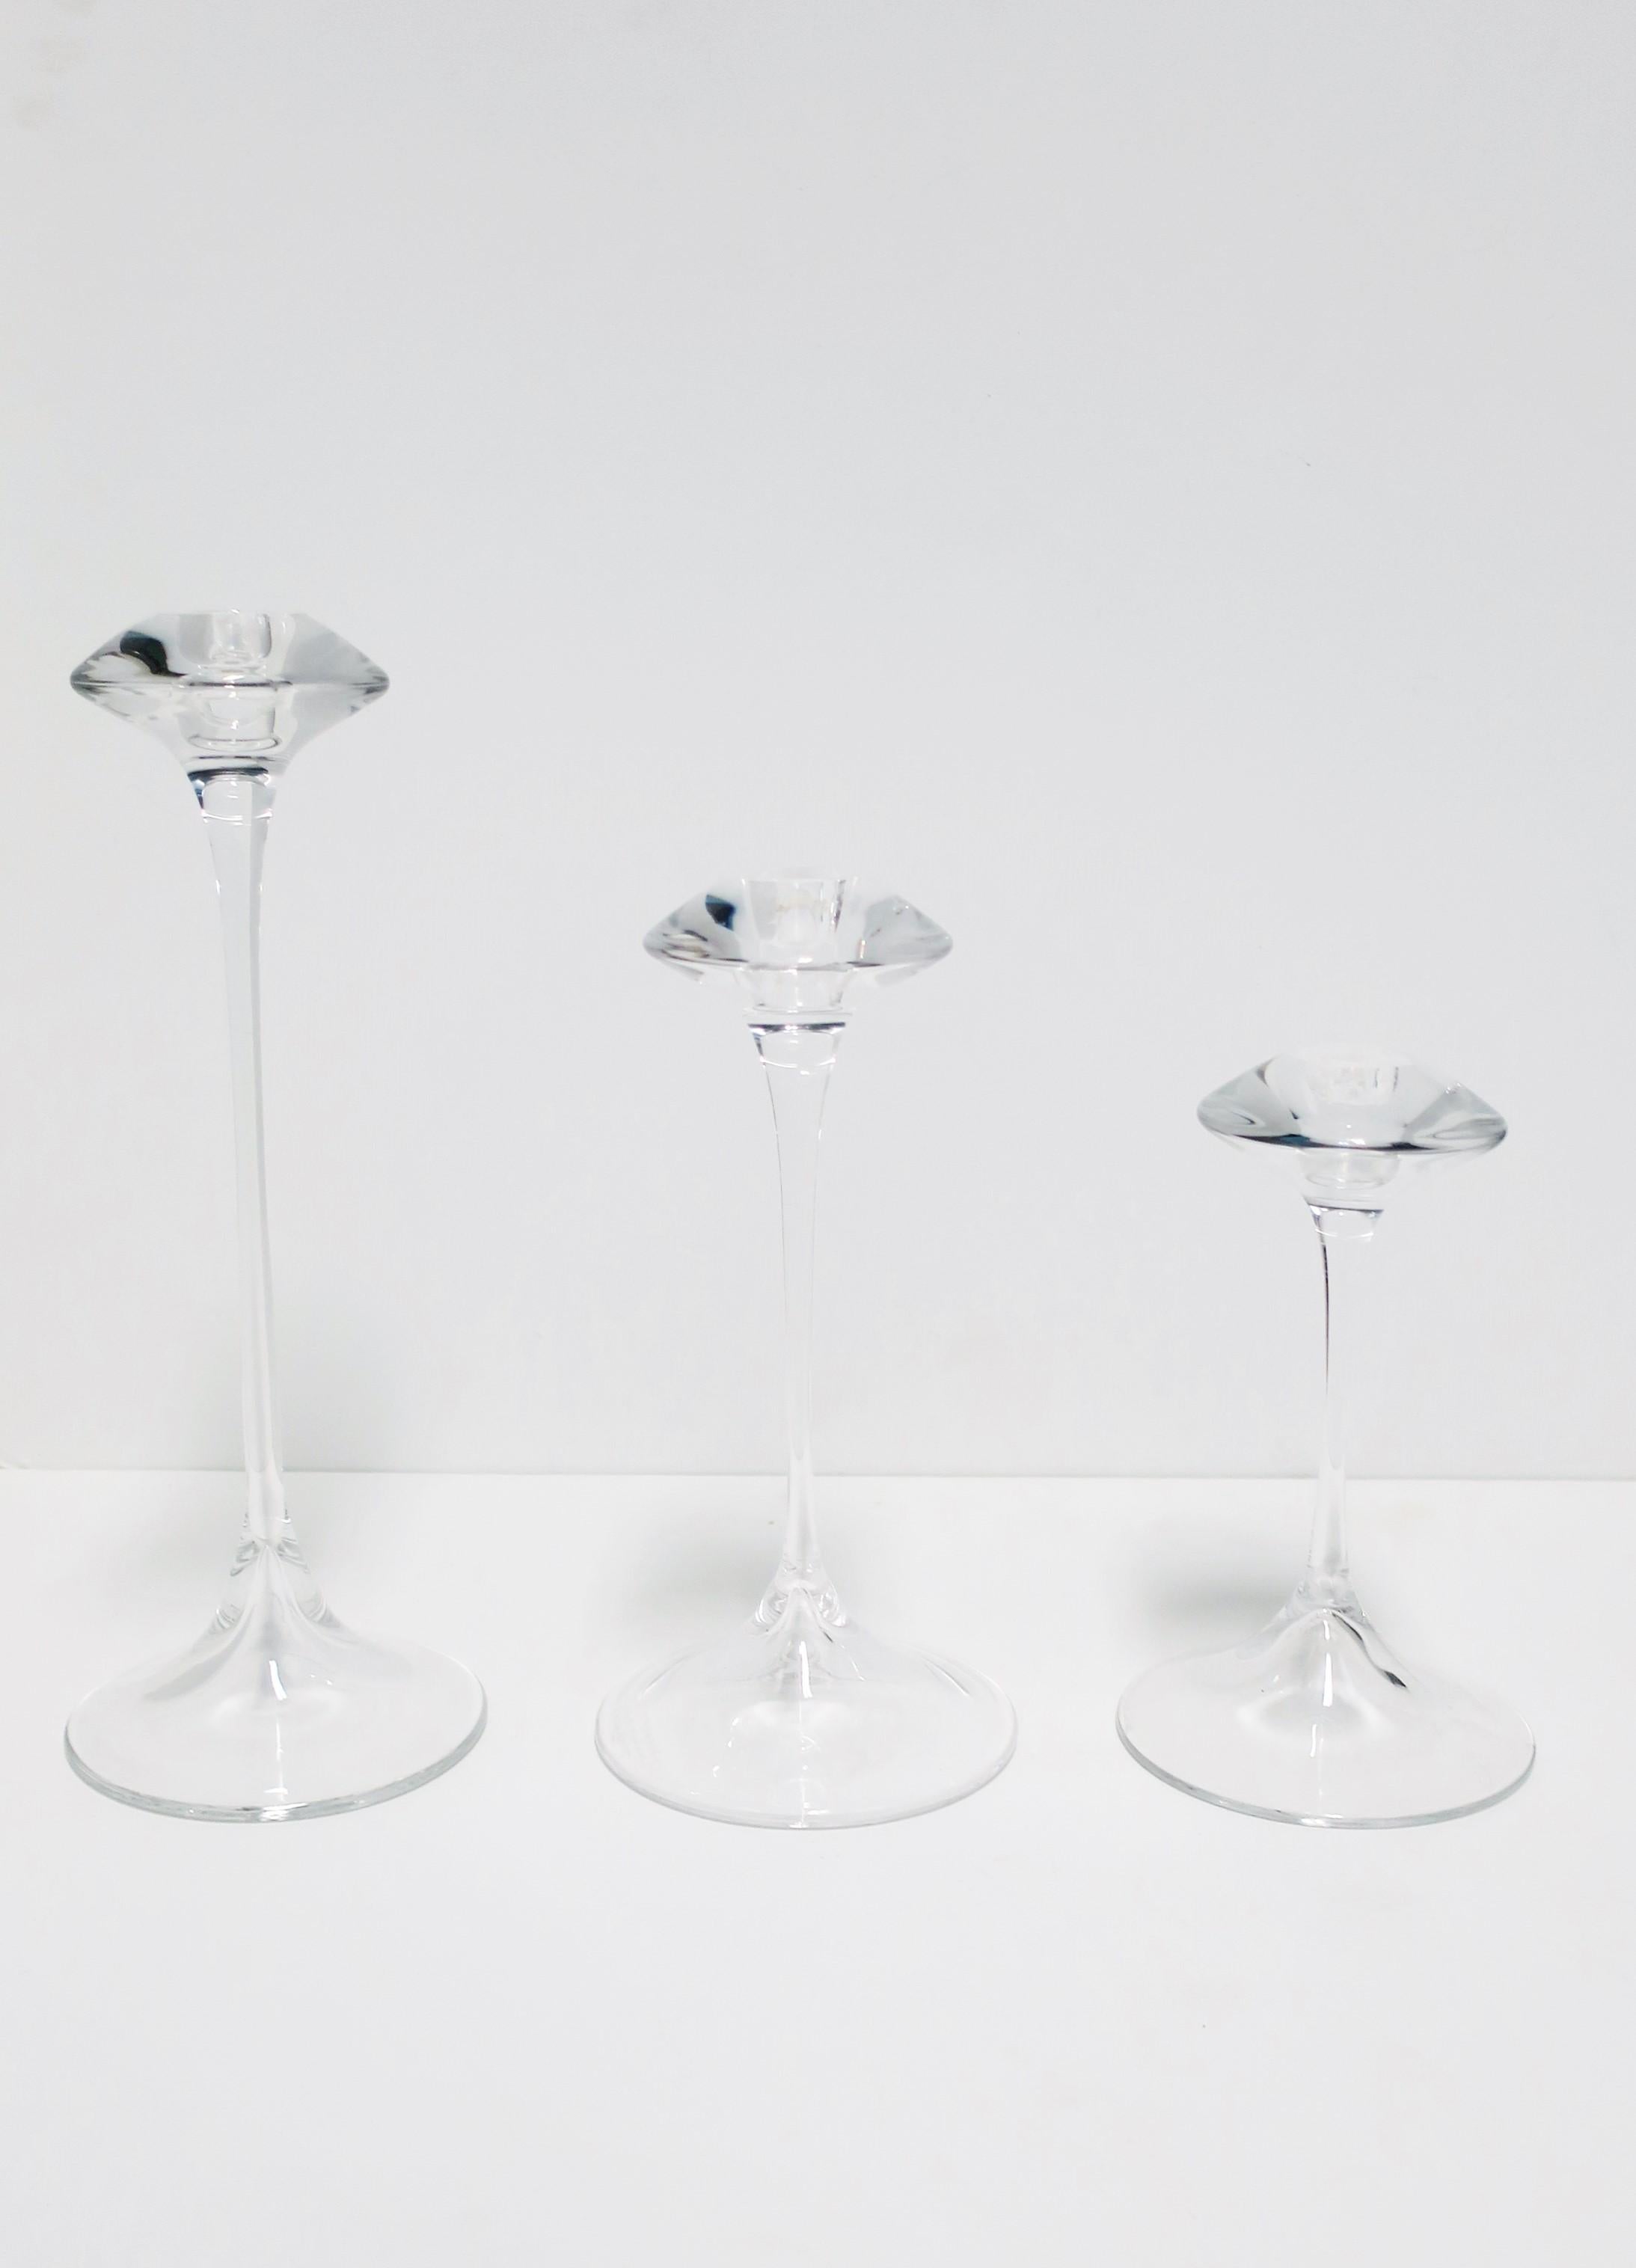 Un magnifique ensemble de trois (3) chandeliers en cristal clair de style scandinave moderne par le designer Kjell Engman pour Kosta Boda, Suède. Avec la marque du fabricant, la signature des designers, et numéroté sur le dessous des trois comme